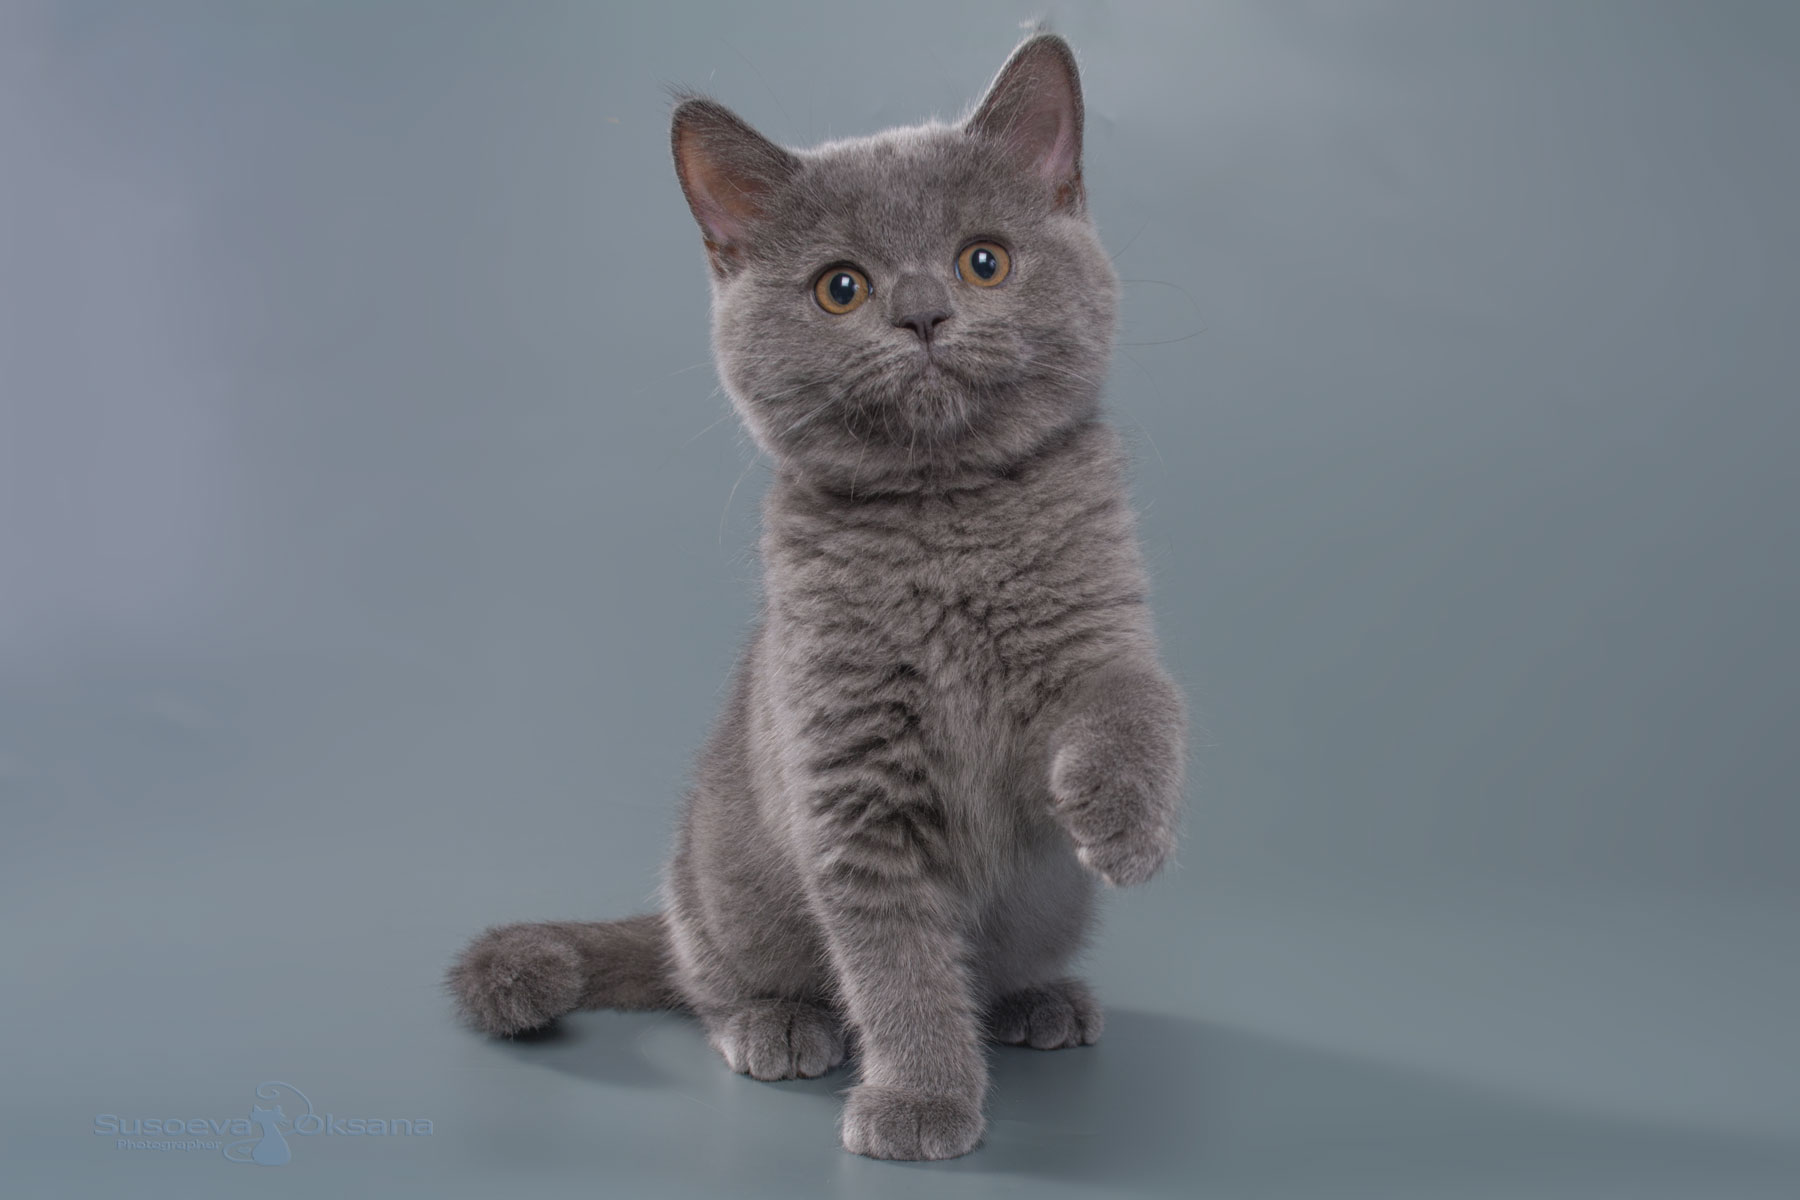 Британская голубая кошка Нора , фото , цена, купить в Минске голубую британскую кошку